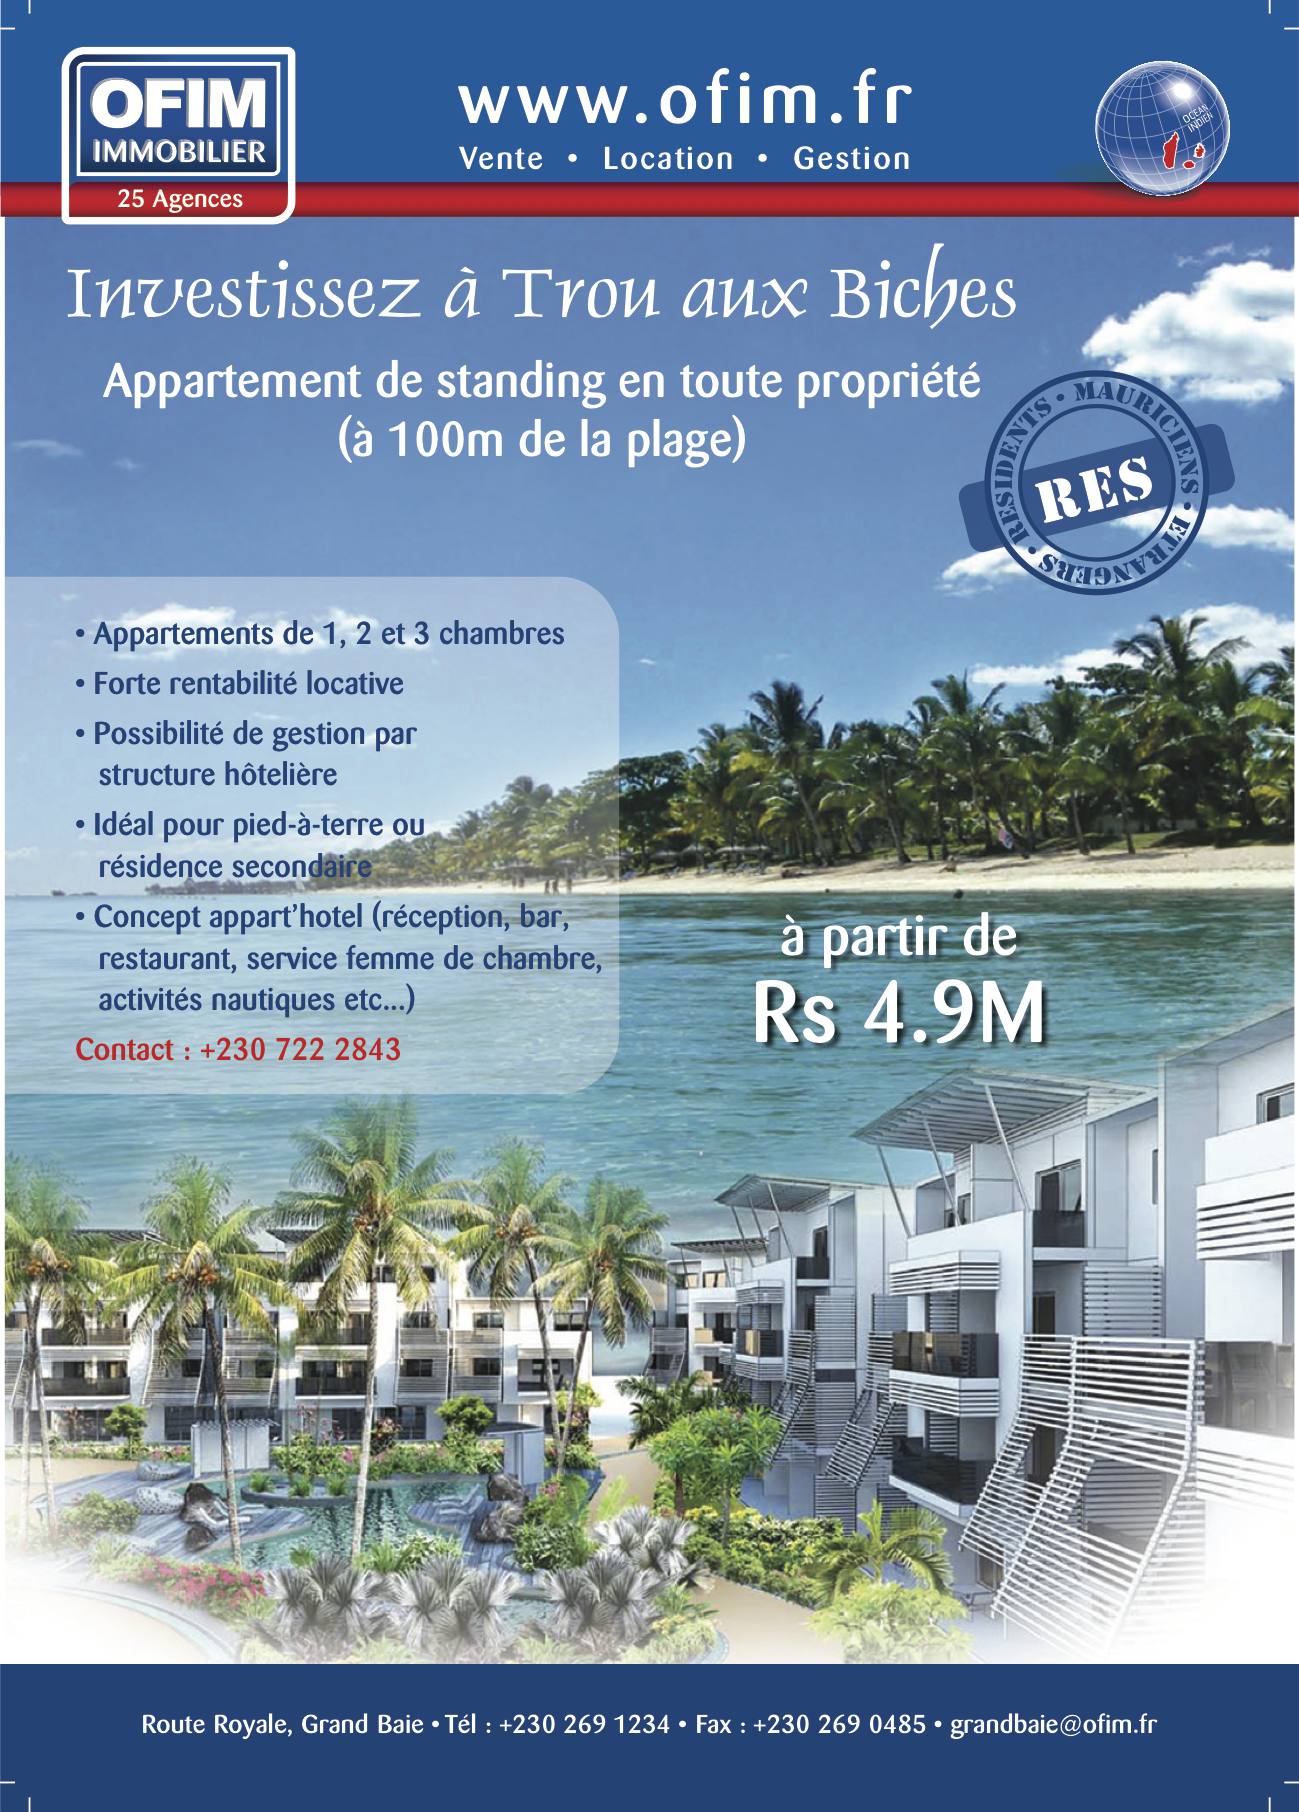 Investir à l’île Maurice vente appartement en RES à Grand baie trou aux Biches